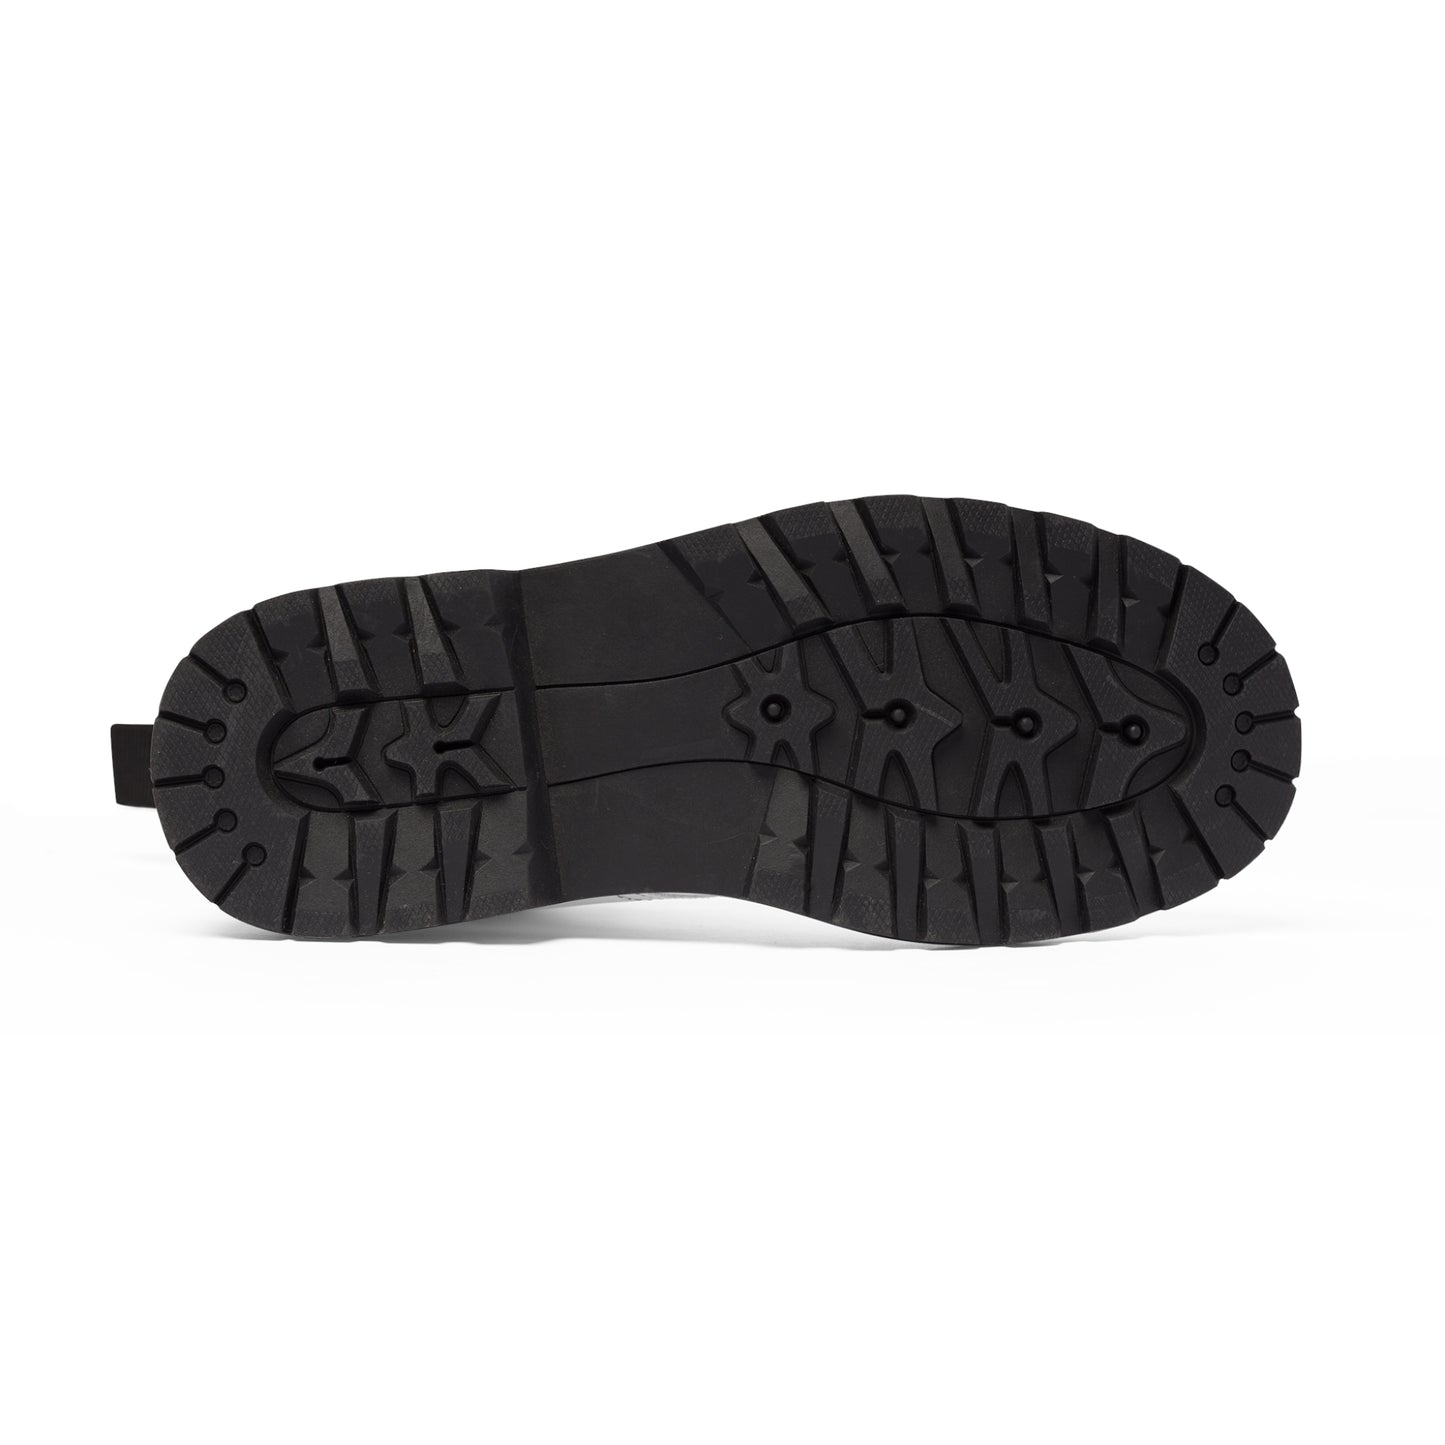 Men's Canvas Boots - 02872 US 10.5 Black sole